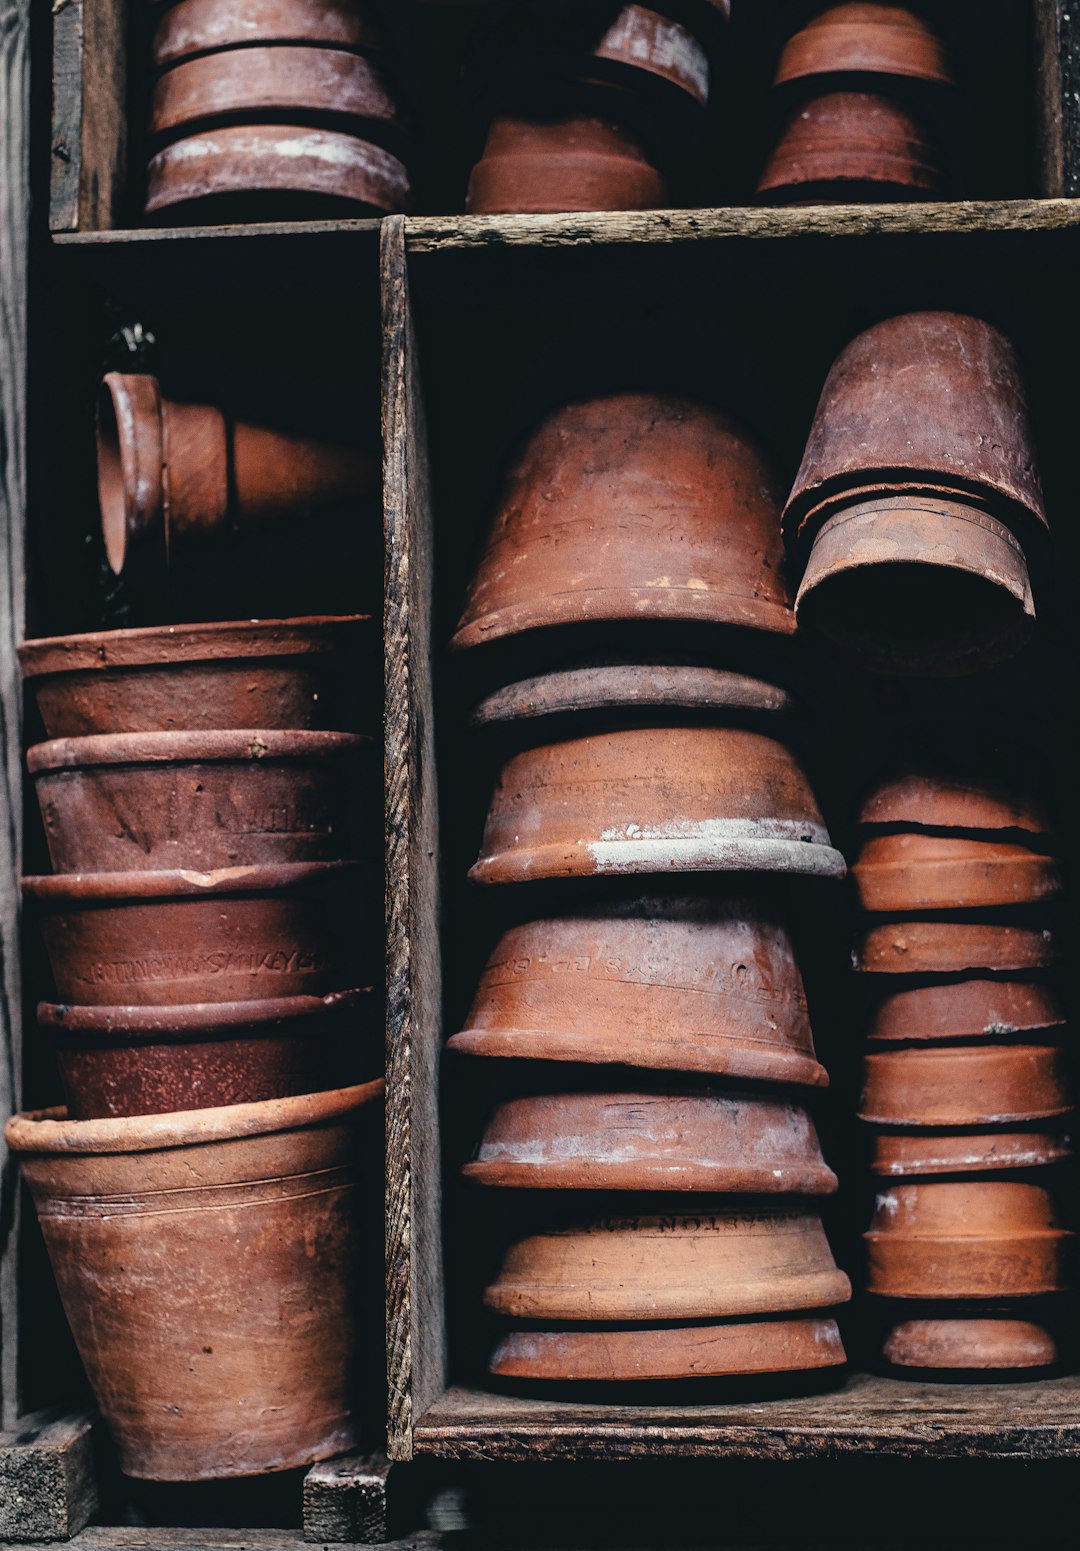 Pots in a cupboard